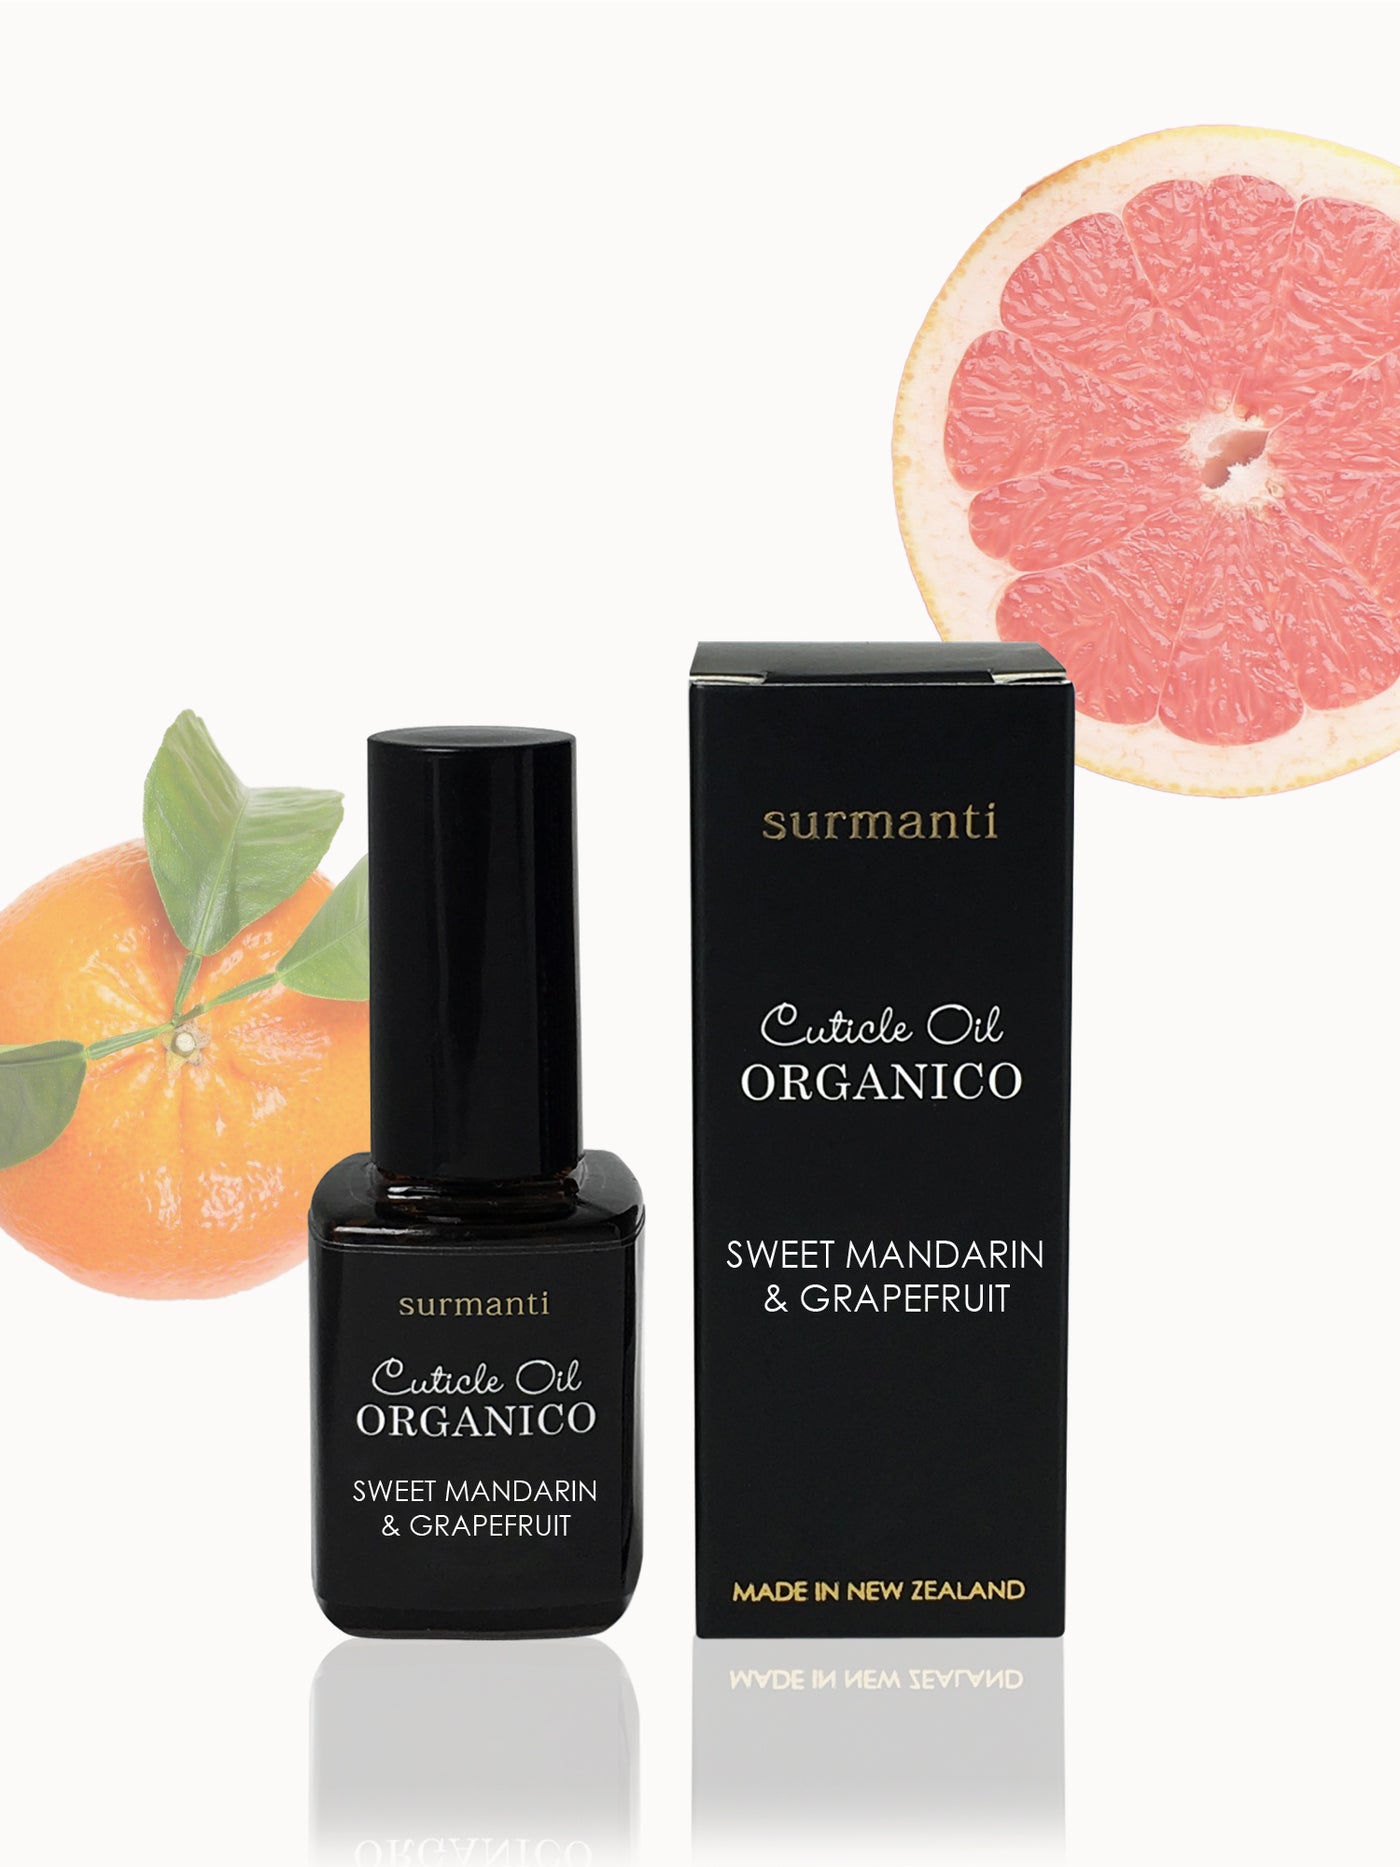 Sweet Mandarin & Grapefruit Organico Cuticle Oil